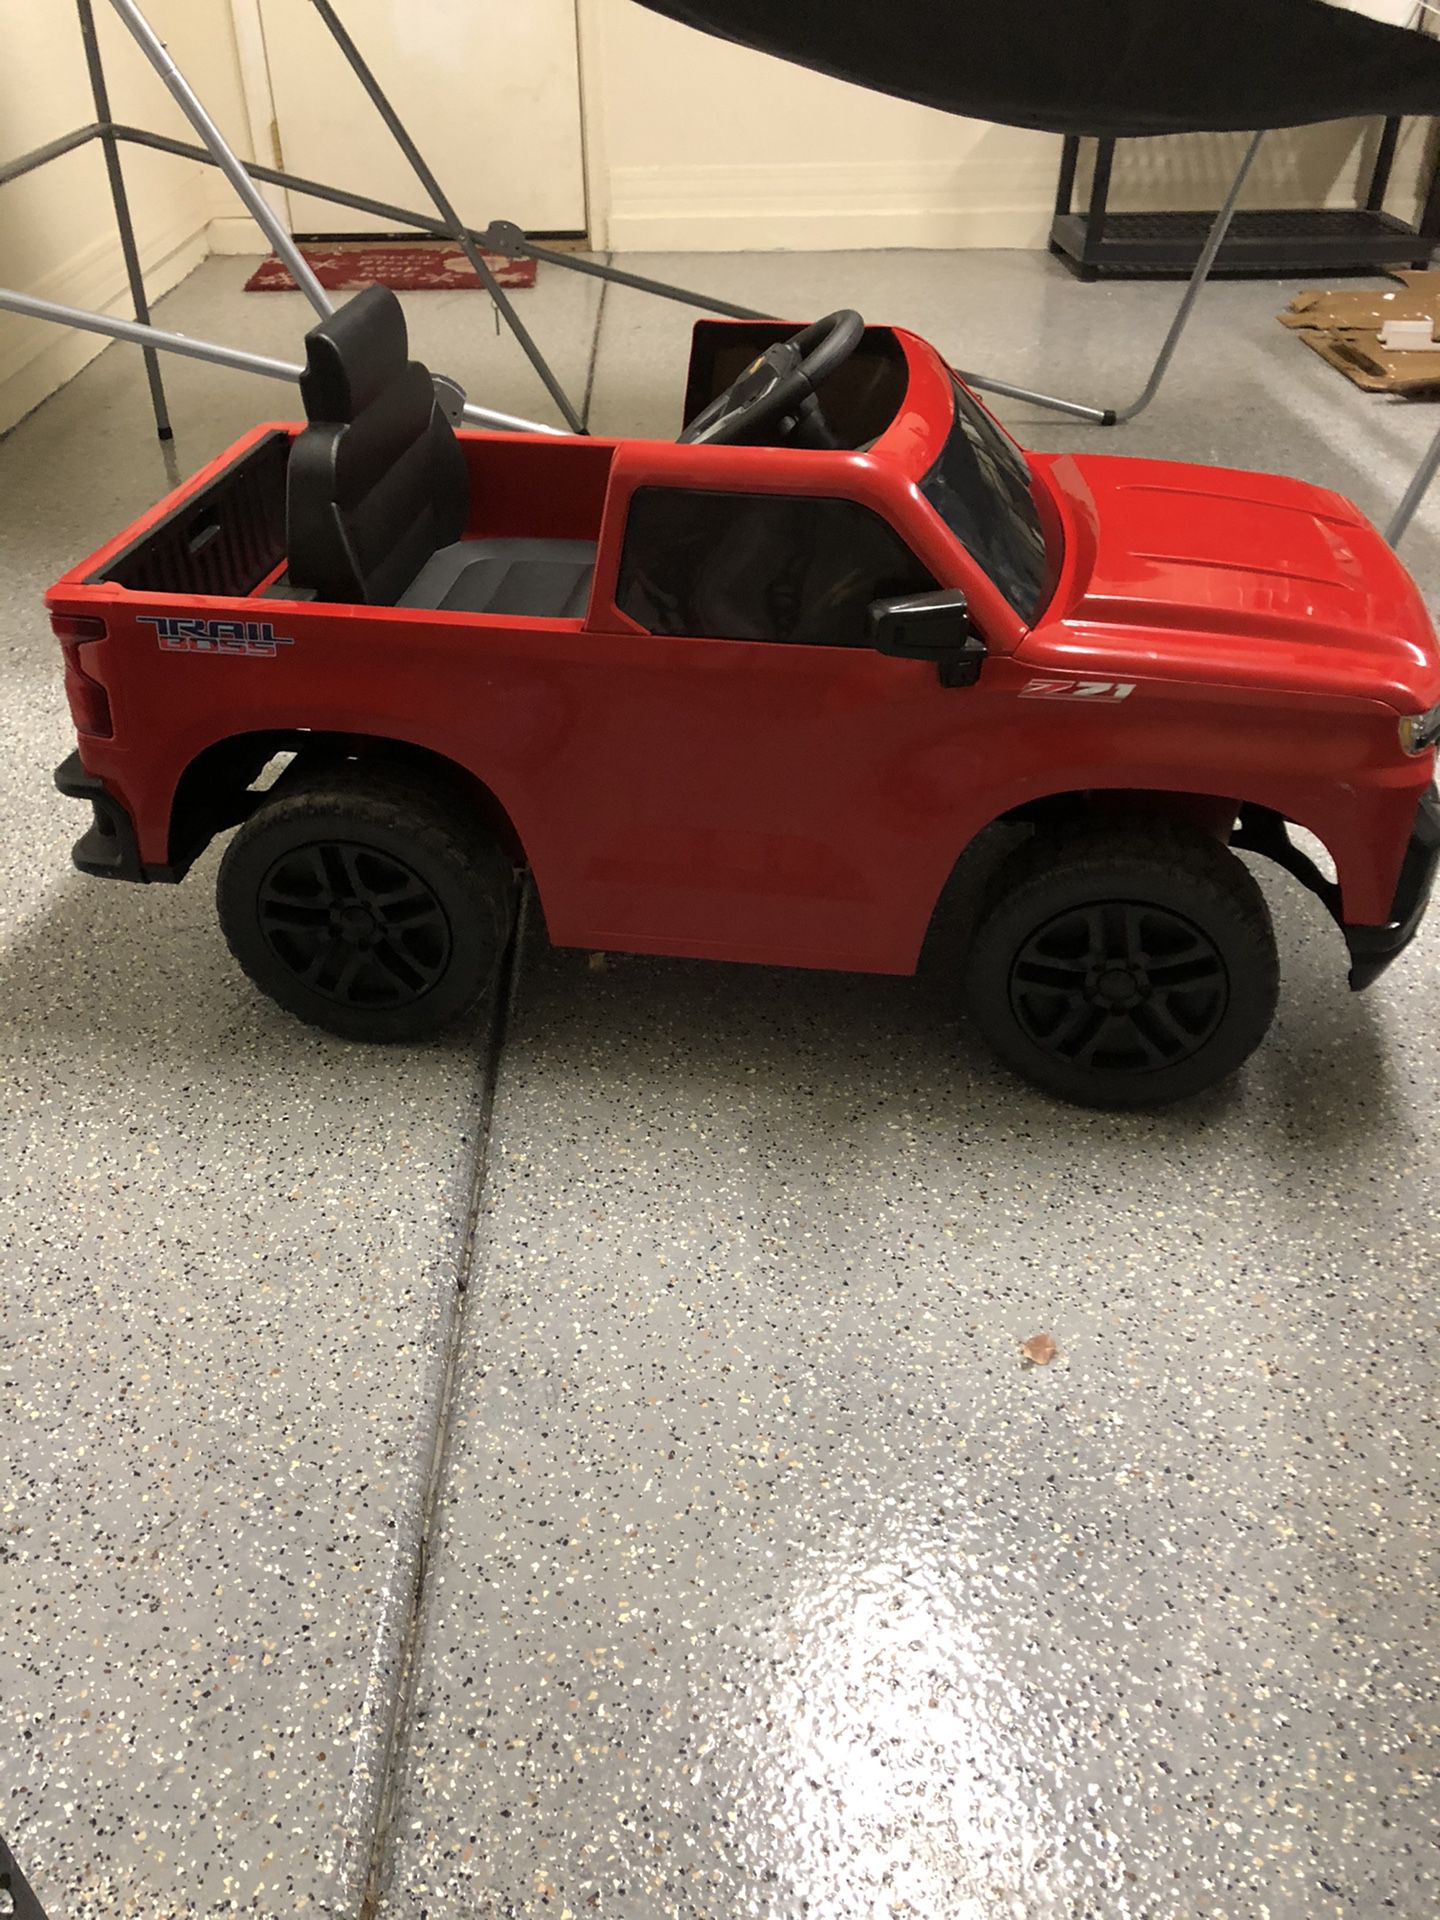 Chevy Silverado toddler truck